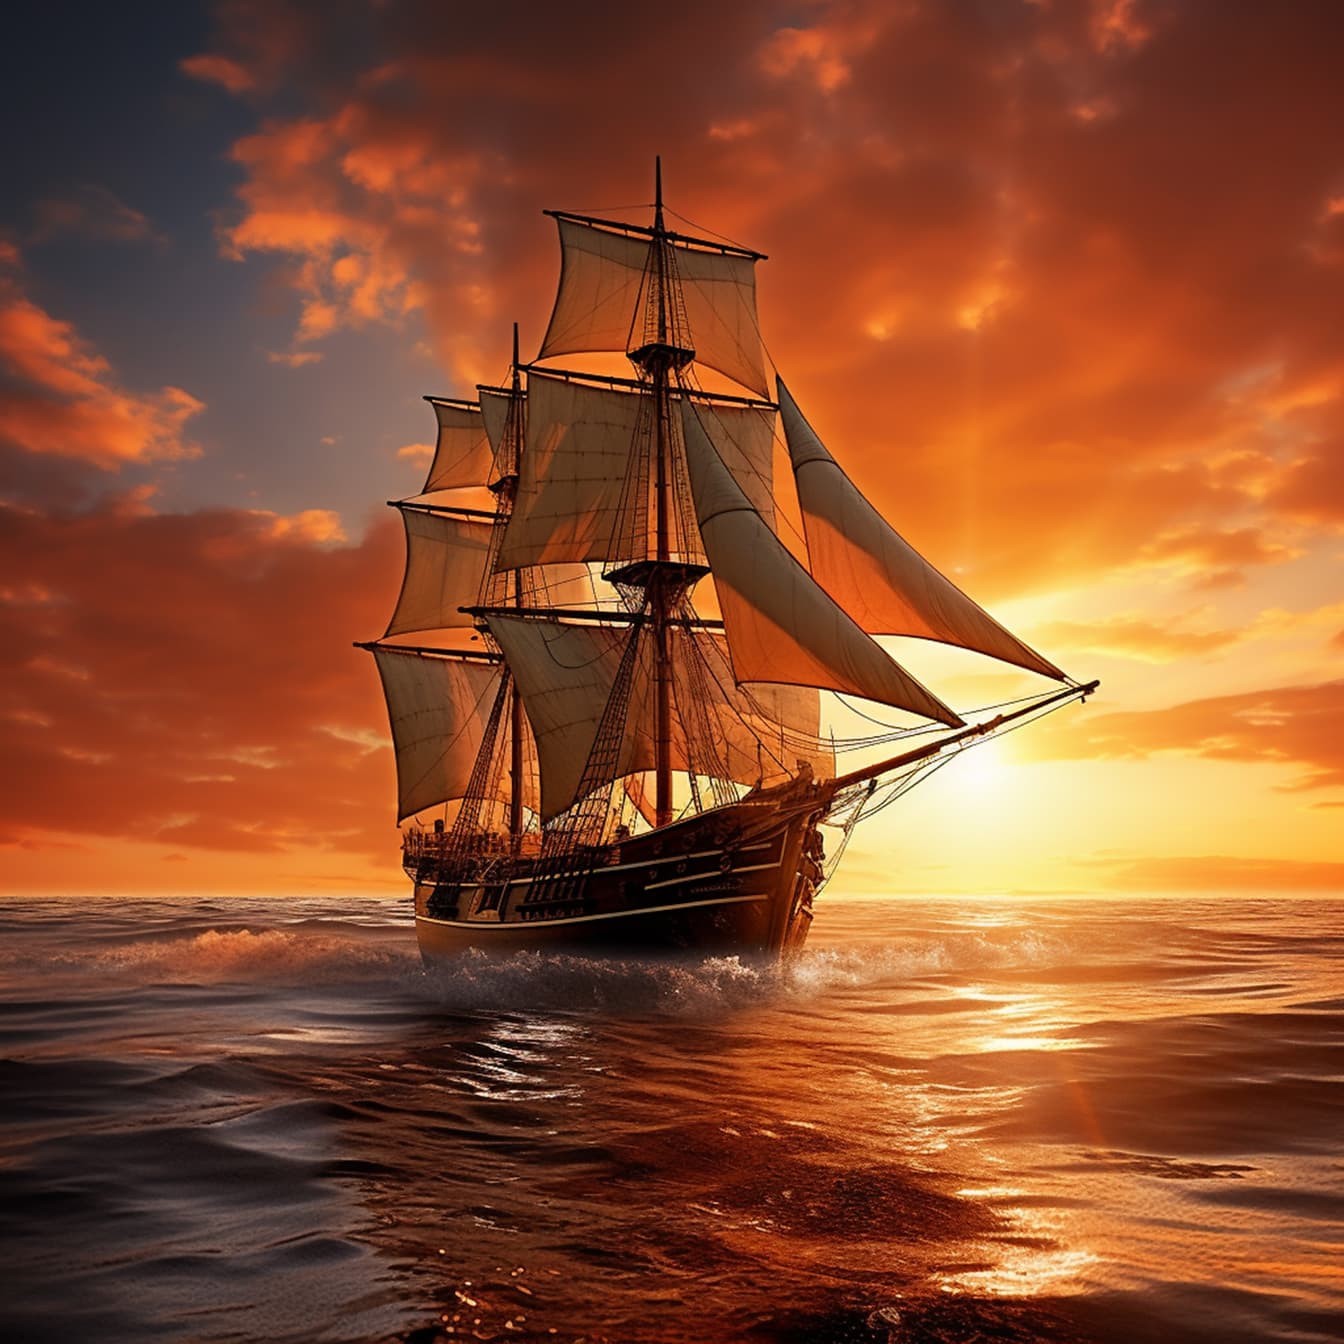 Gamle stil sejlskib på havbølger med dramatisk solnedgang baggrund